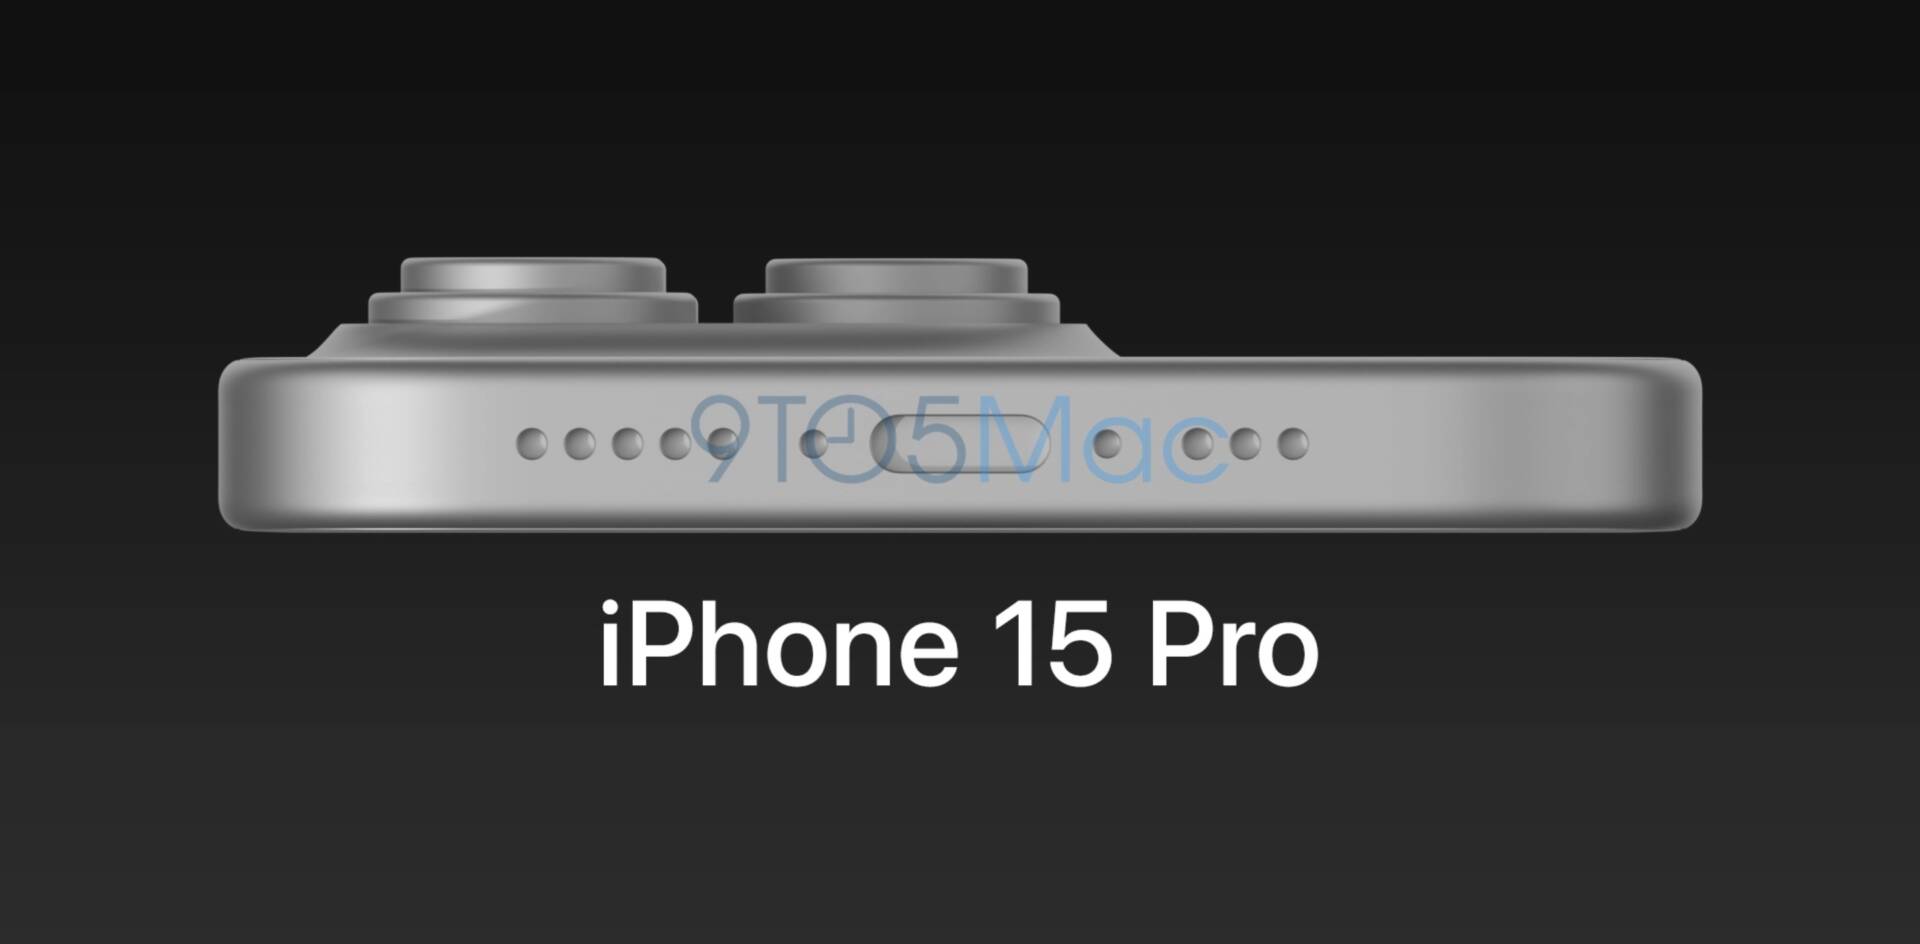 iPhone 15 Pro únik: Pohľad zospodu (USB-C konektor a väčšie kamery)